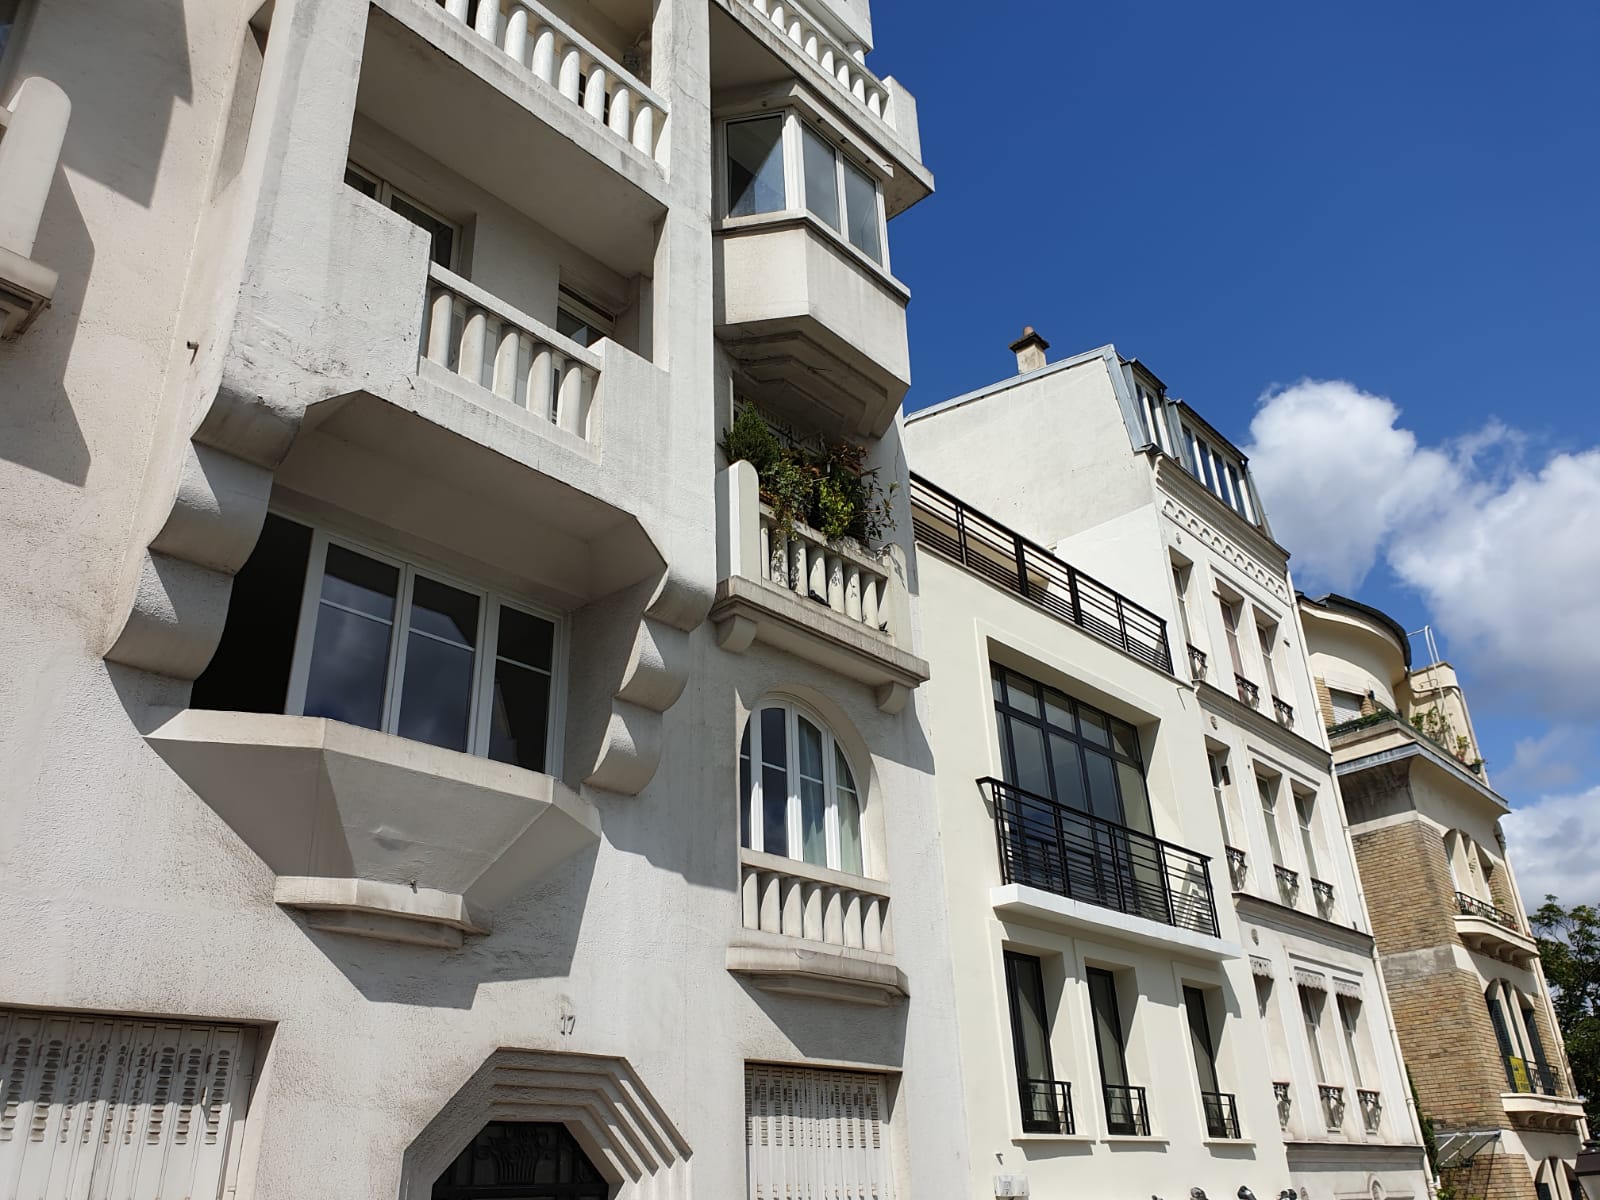 My Montmartre Tours - Typical Art nouveau building